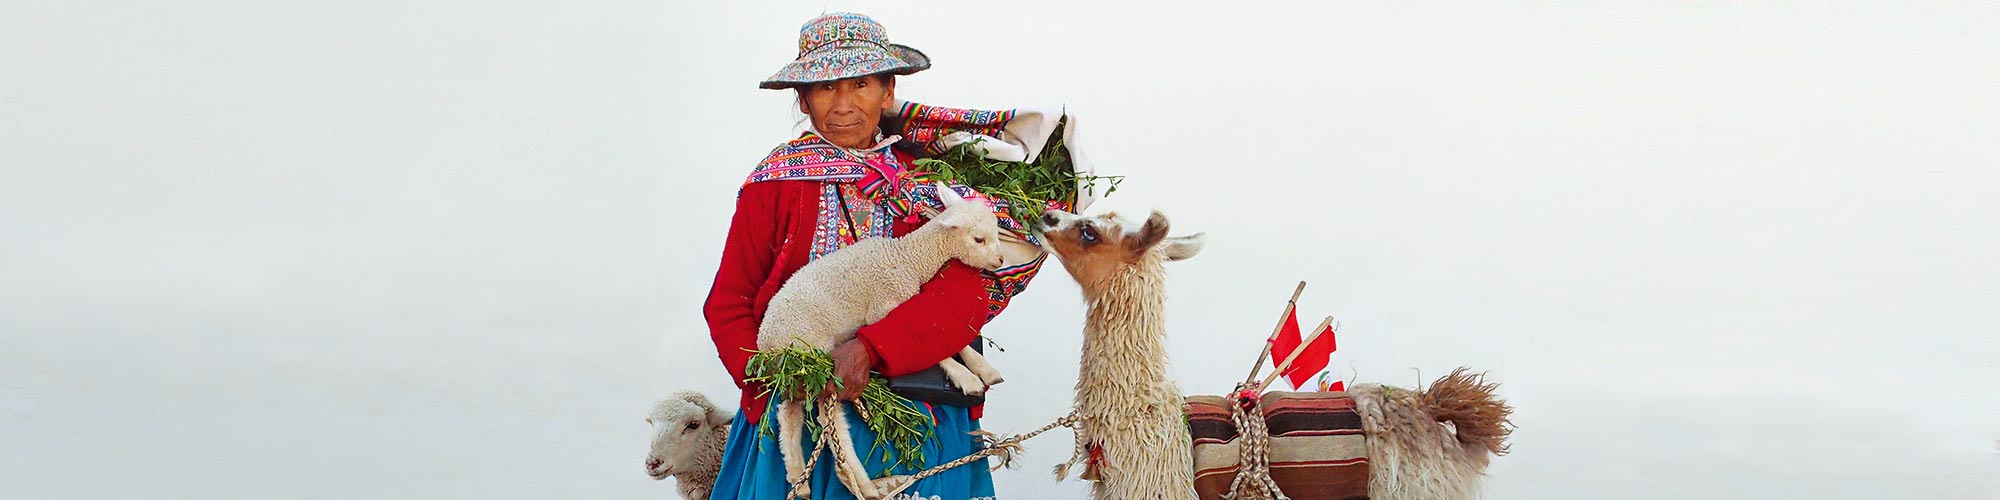 Inka Trail Trekking: nachhaltiger Tourismus in Peru